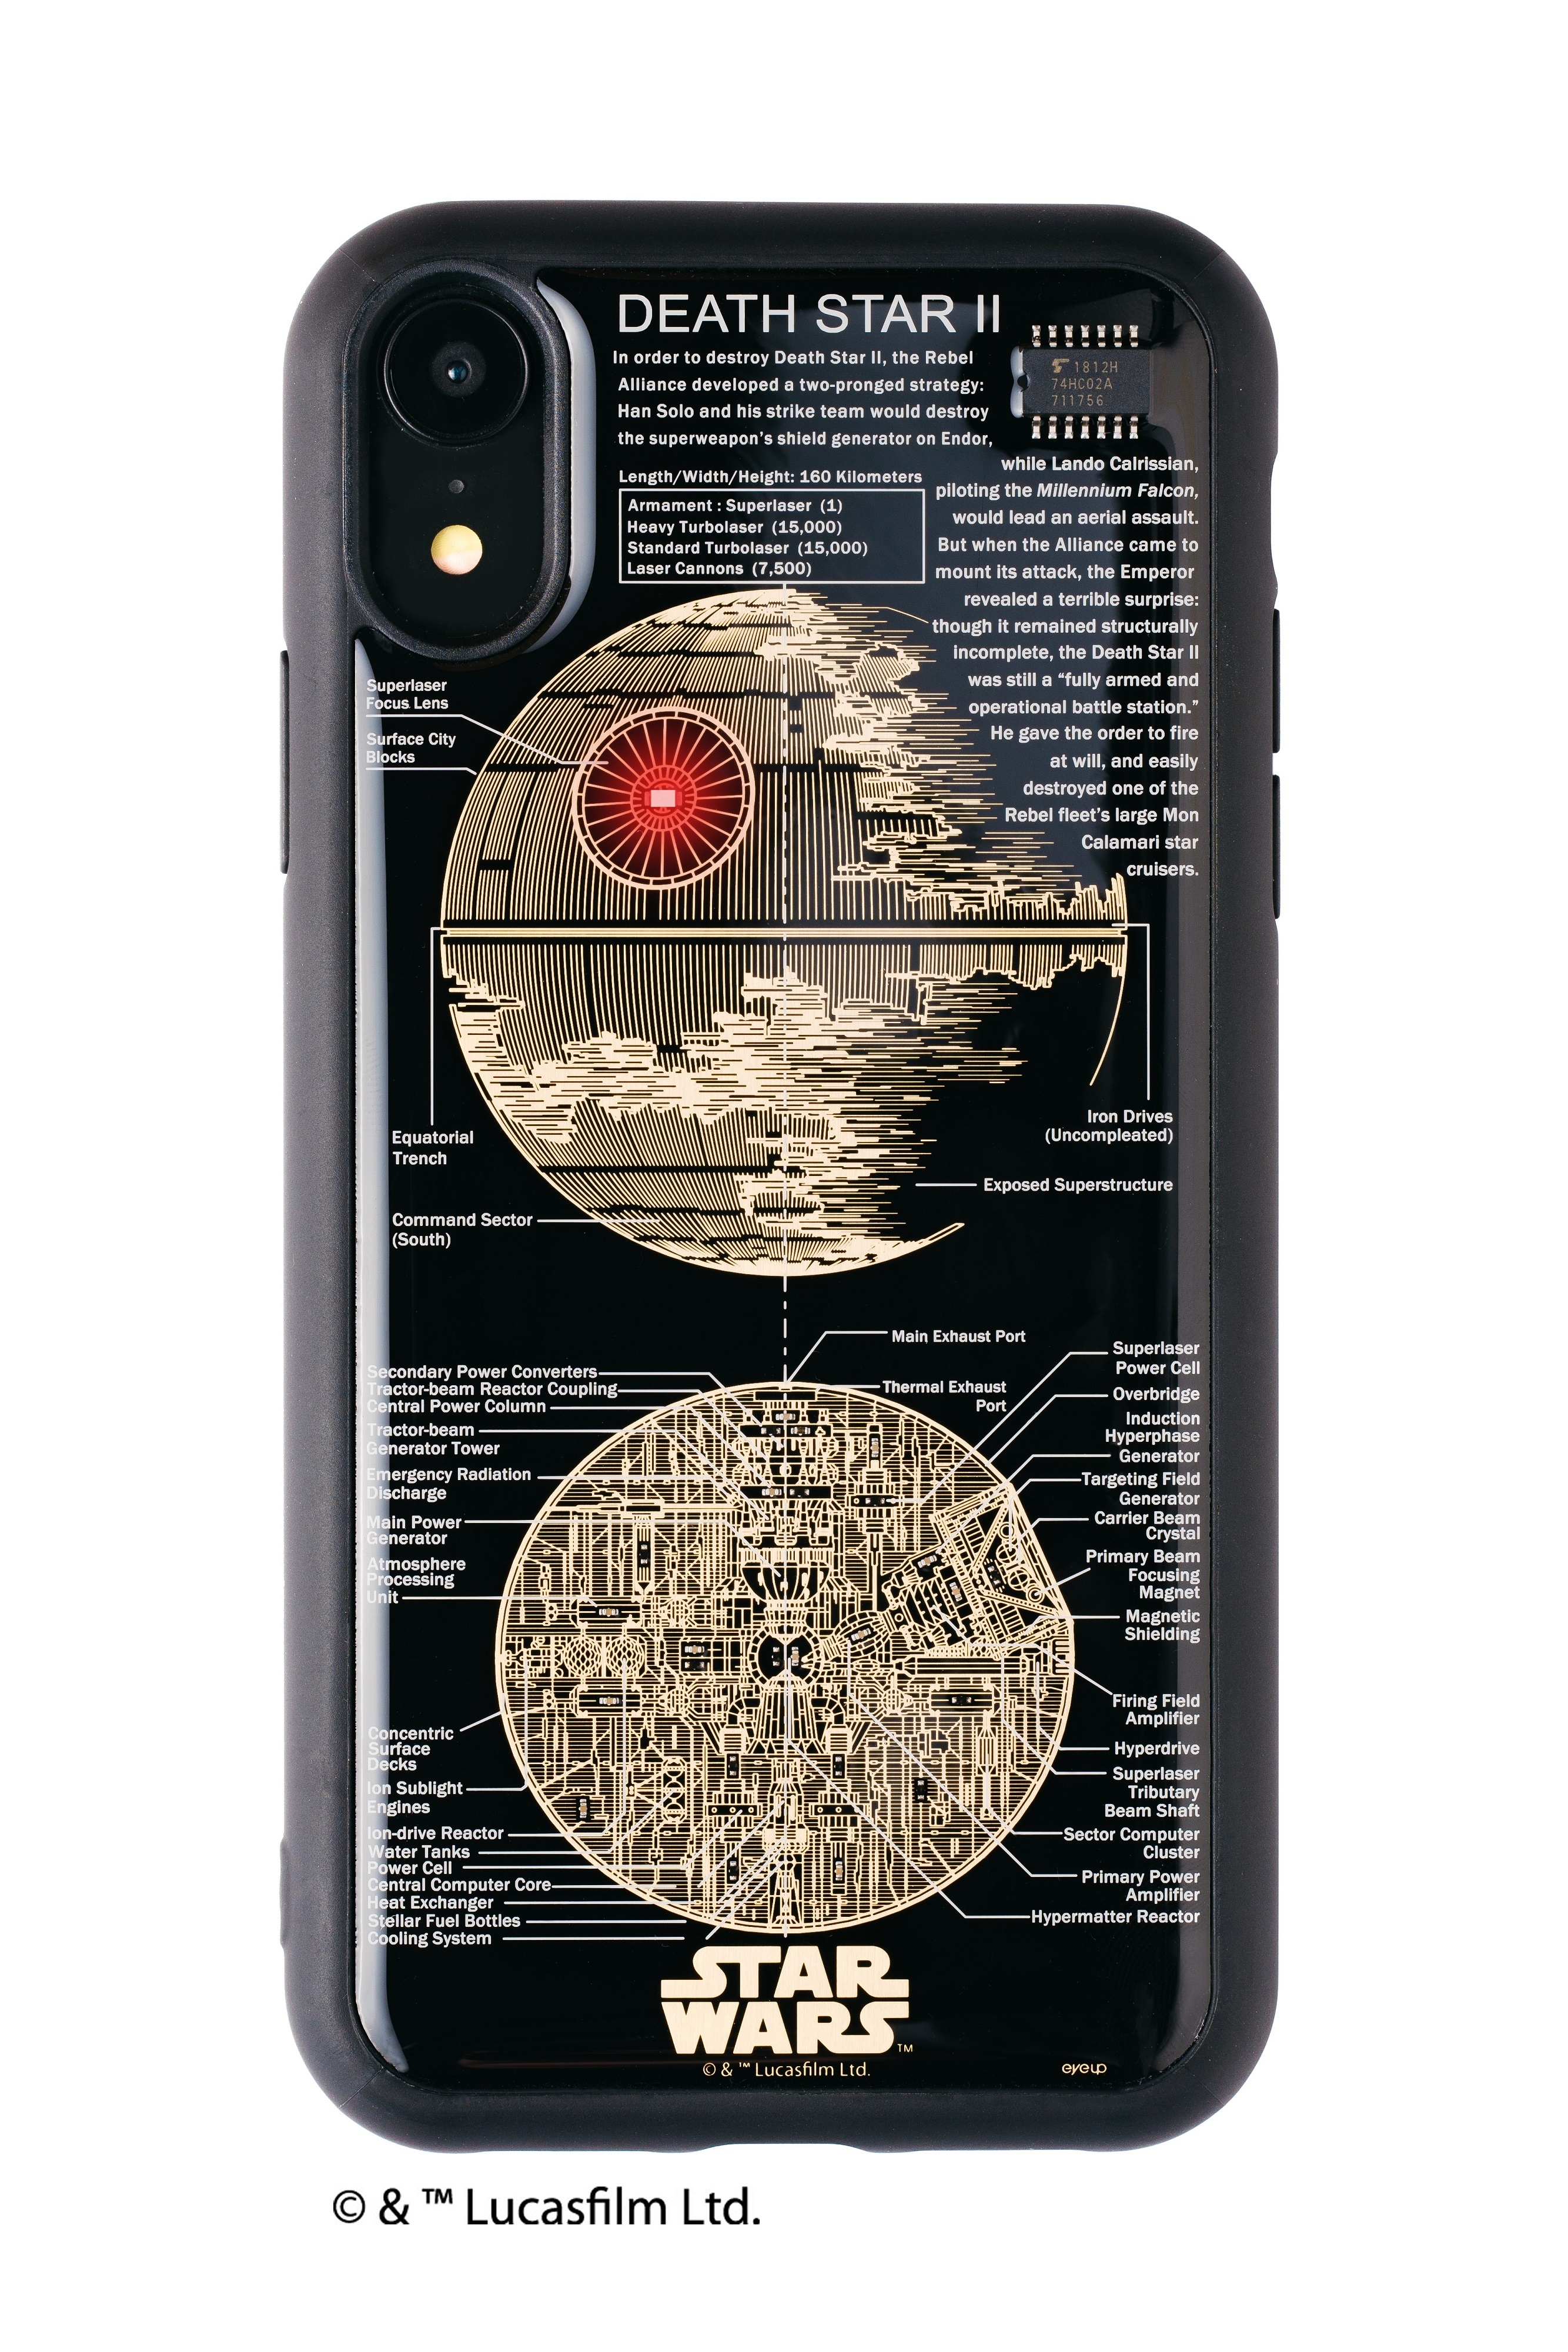 電池無しでledが光るギミックを搭載 スター ウォーズの X Wing Tm などが基板アートで描かれたiphone最新機種対応ケースが登場 日本限定商品 株式会社電子技販のプレスリリース